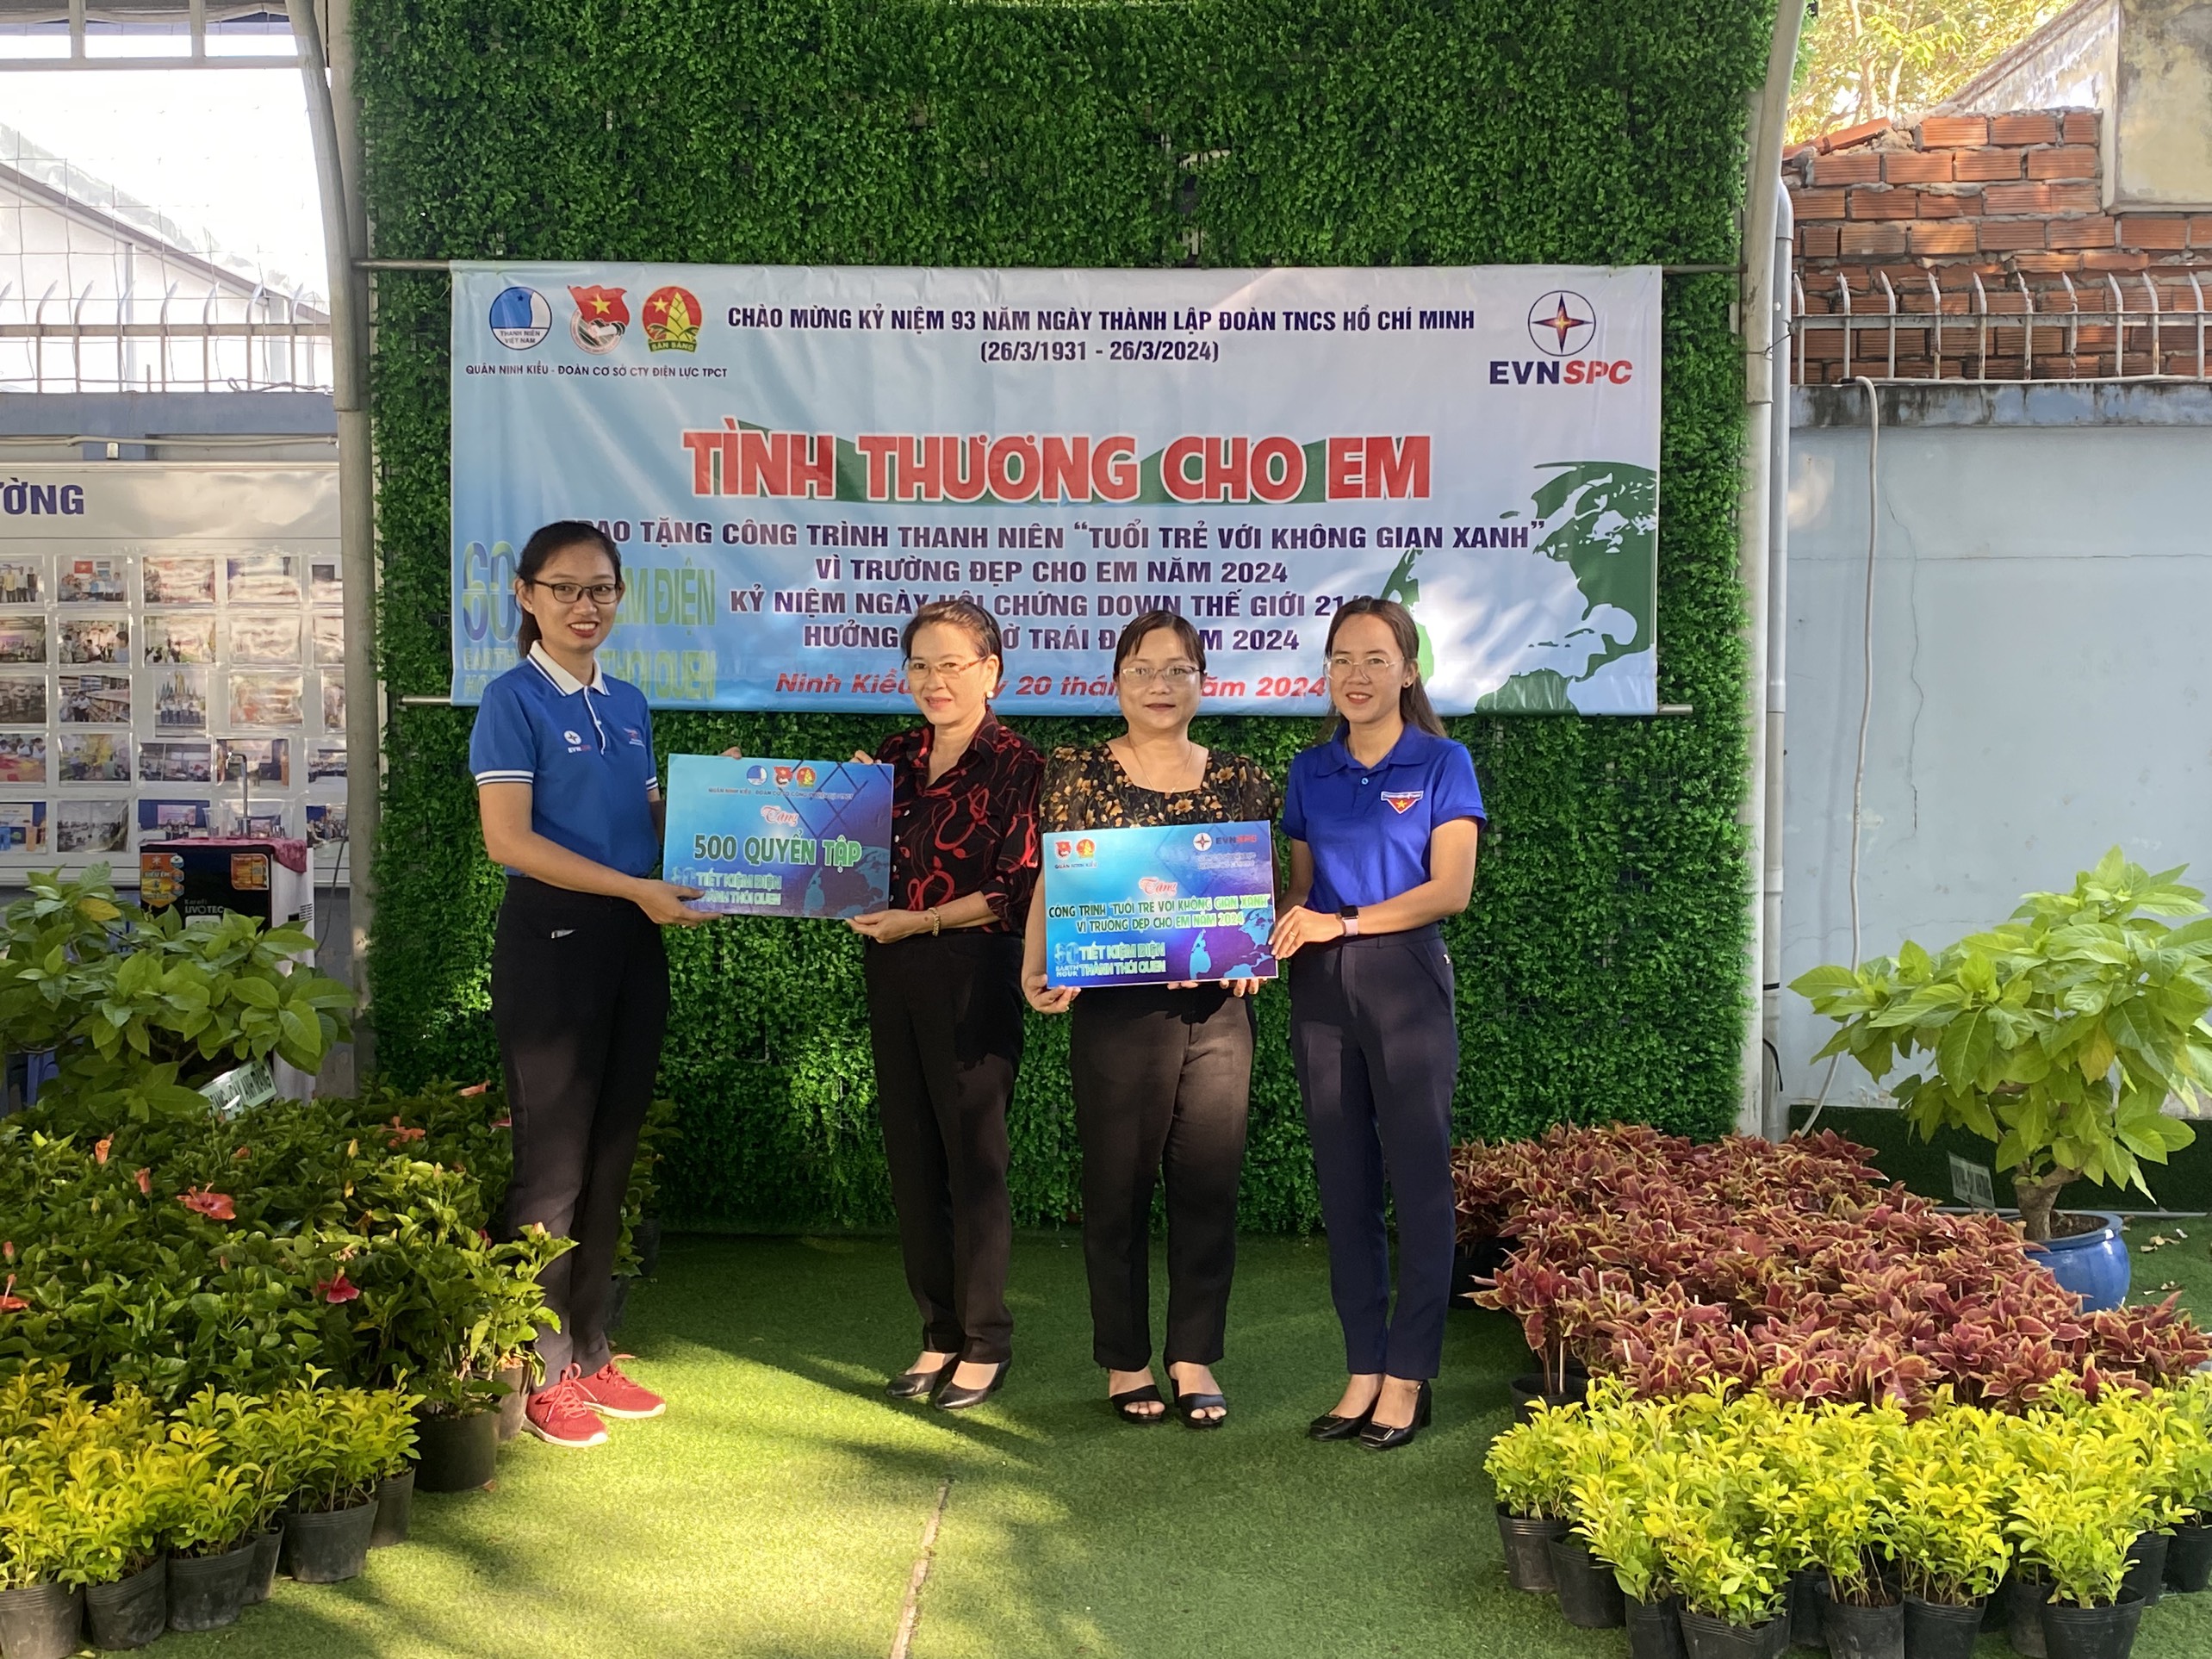 KG01: Quận đoàn Ninh Kiều - Đoàn cơ sở Công ty Điện lực TPCT trao tặng bảng tượng trưng công trình thanh niên và trao tặng 500 quyển tập cho các em học sinh tại Trường Tương lai